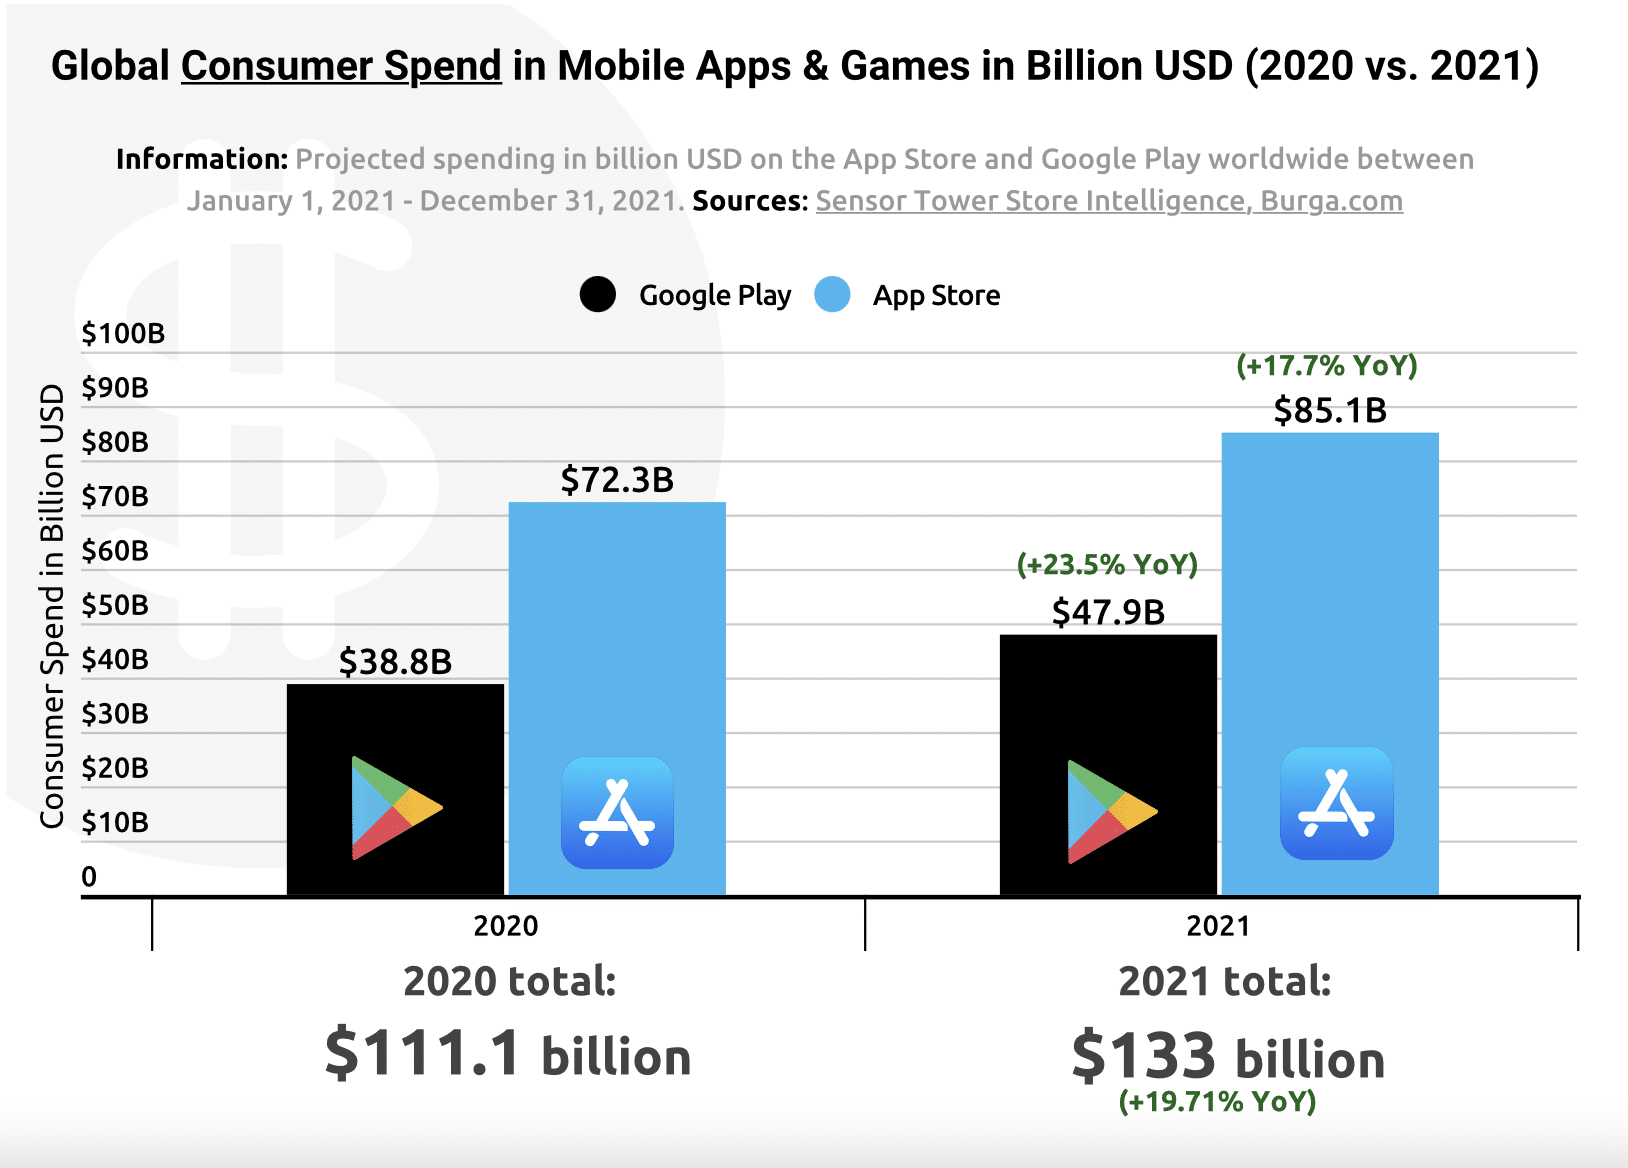 Dinheiro gerado com a venda de apps em 2020 e 2021